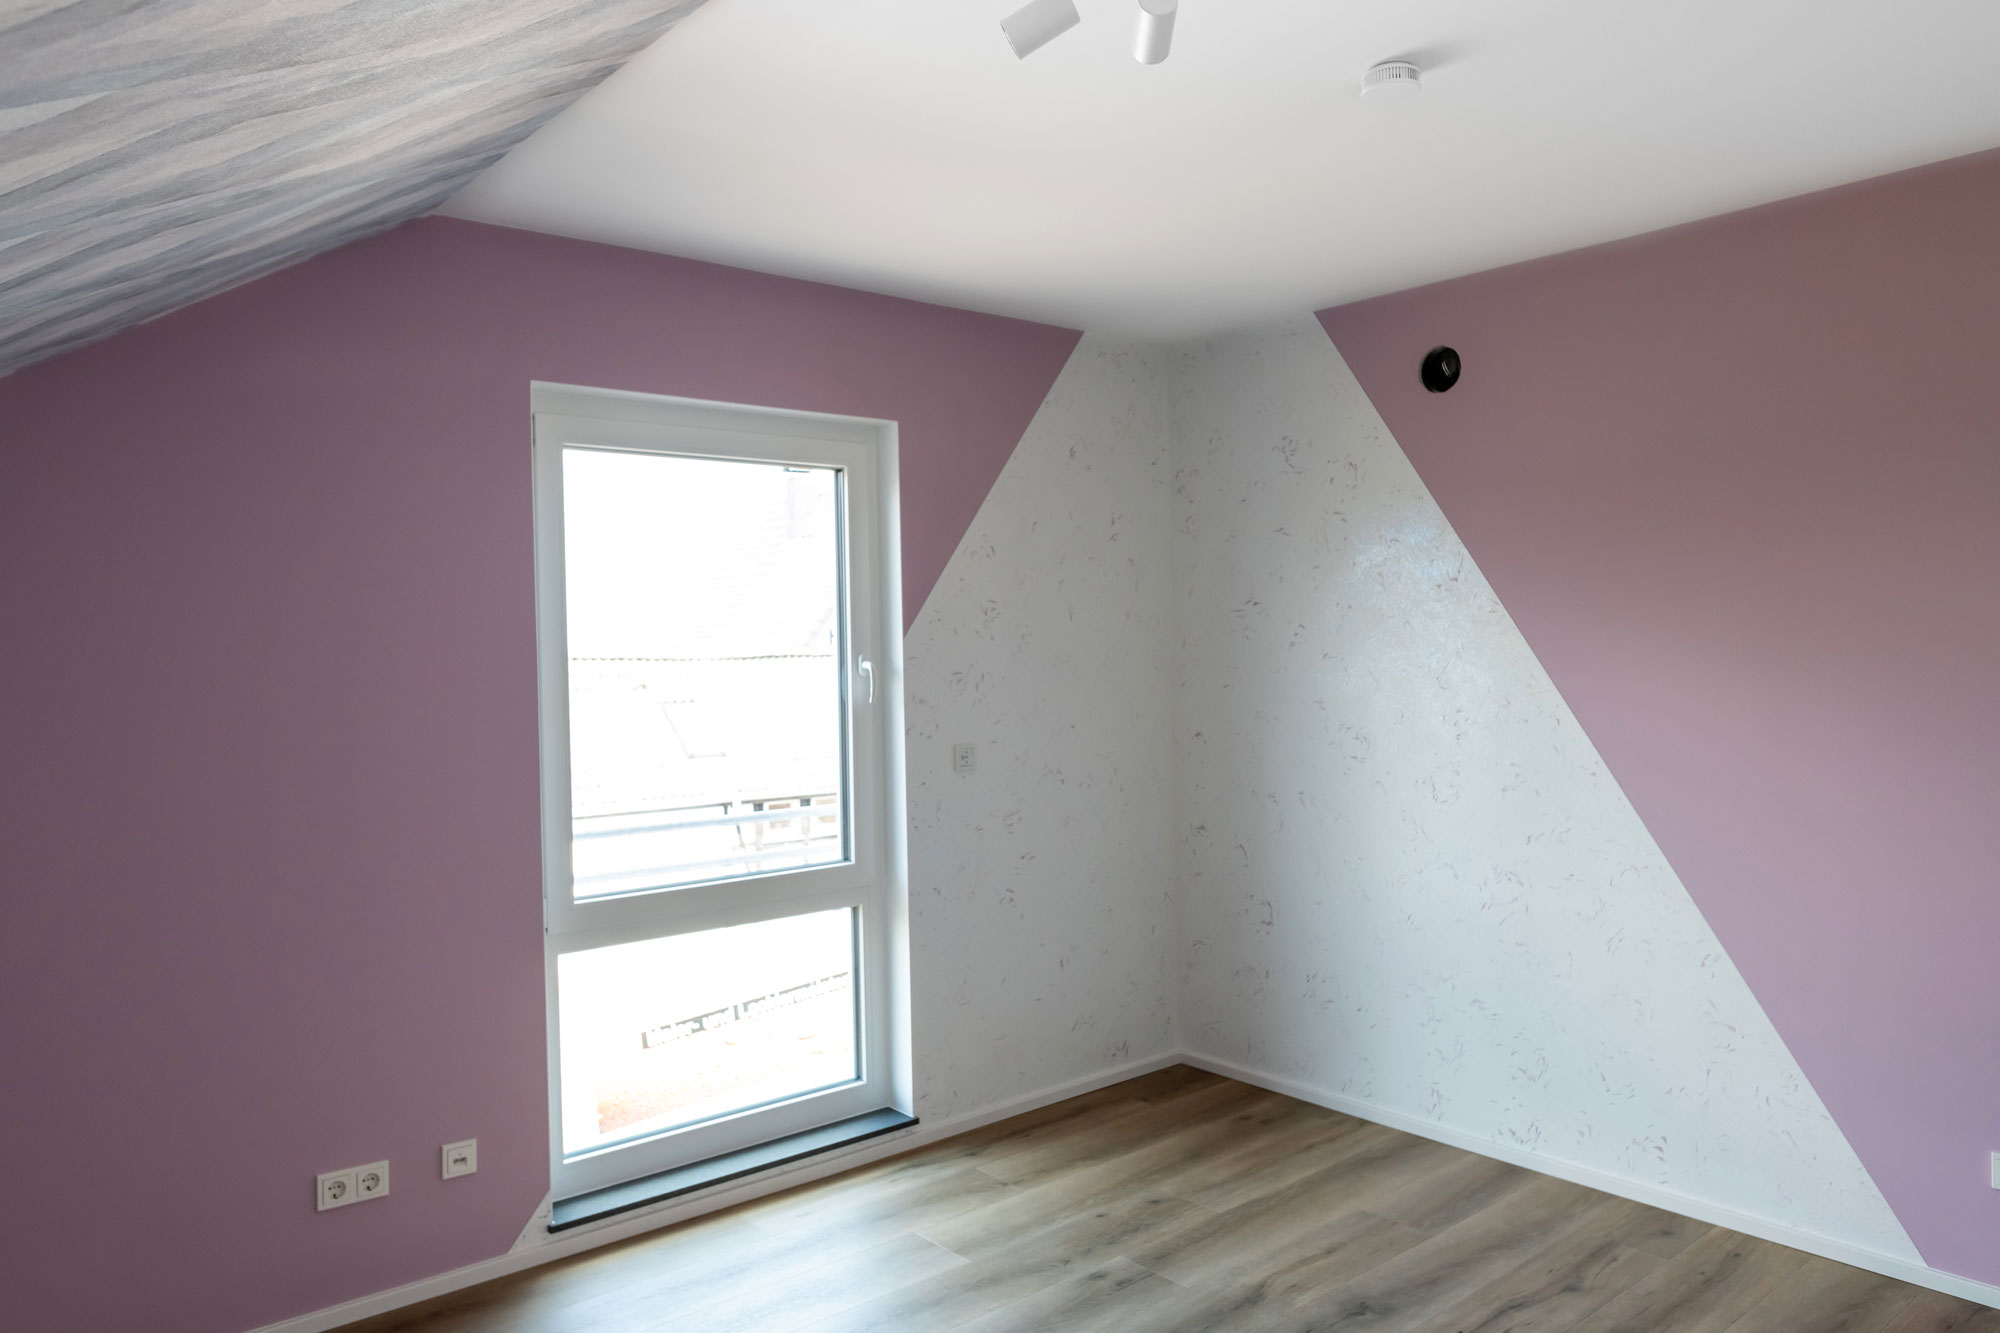 Ein Zimmer im Dachgeschoss in Kreativtechnik mit altrosa Wand auf der in einer Ecke am Fenster zwei weiße Dreiecke zusammen laufen.